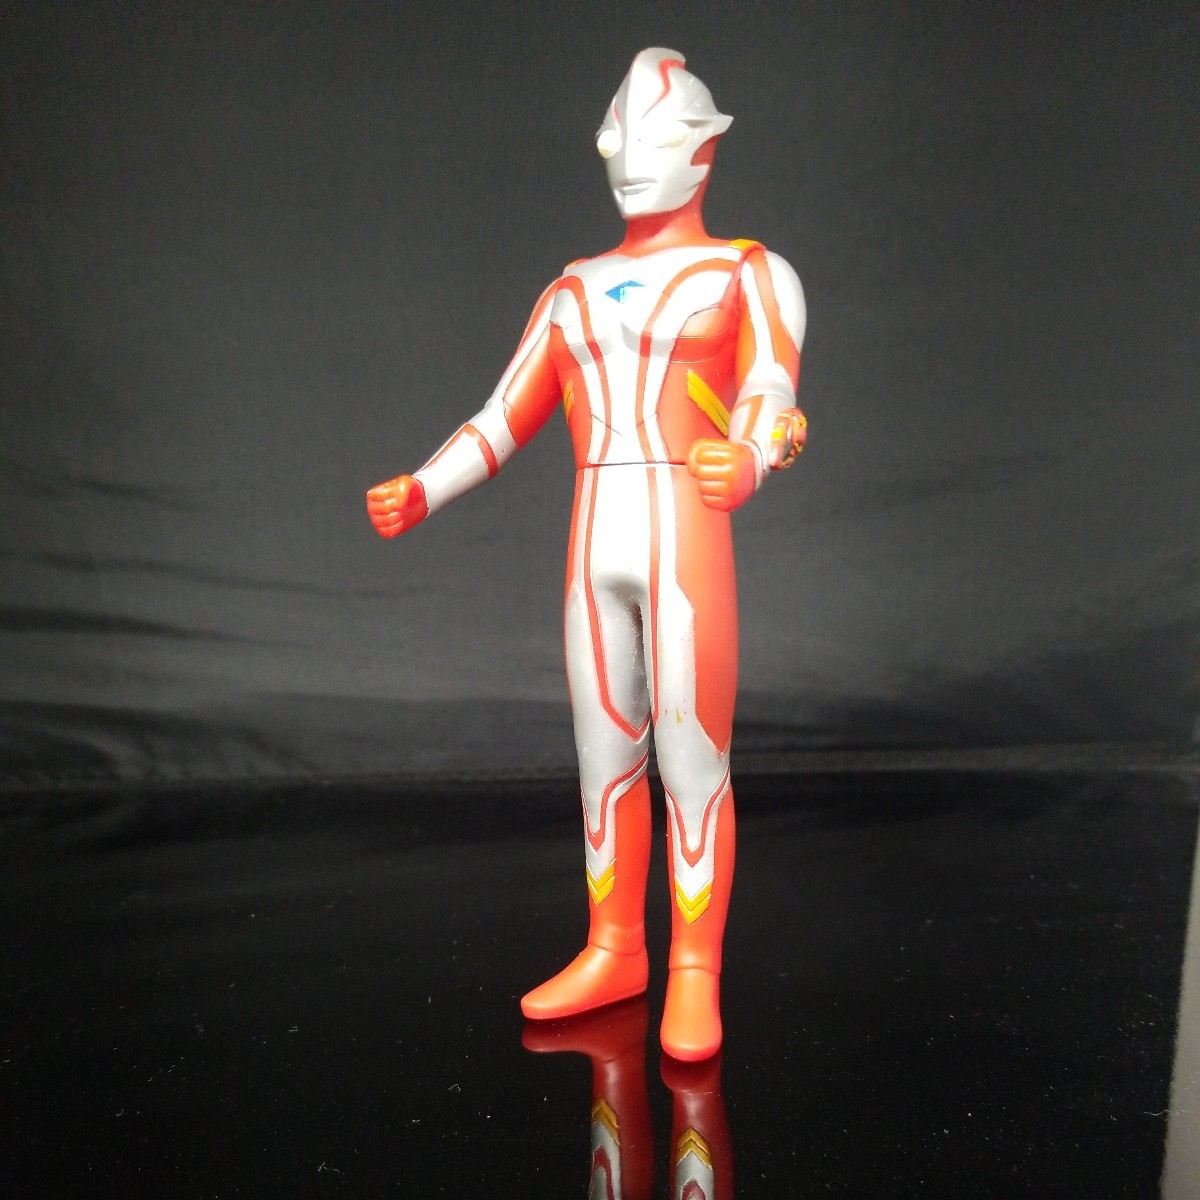  Bandai Ultra герой серии 19 Ultraman Mebius изображение . полностью. перед ставкой. обязательно описание товара . прочитайте пожалуйста. б/у товар..